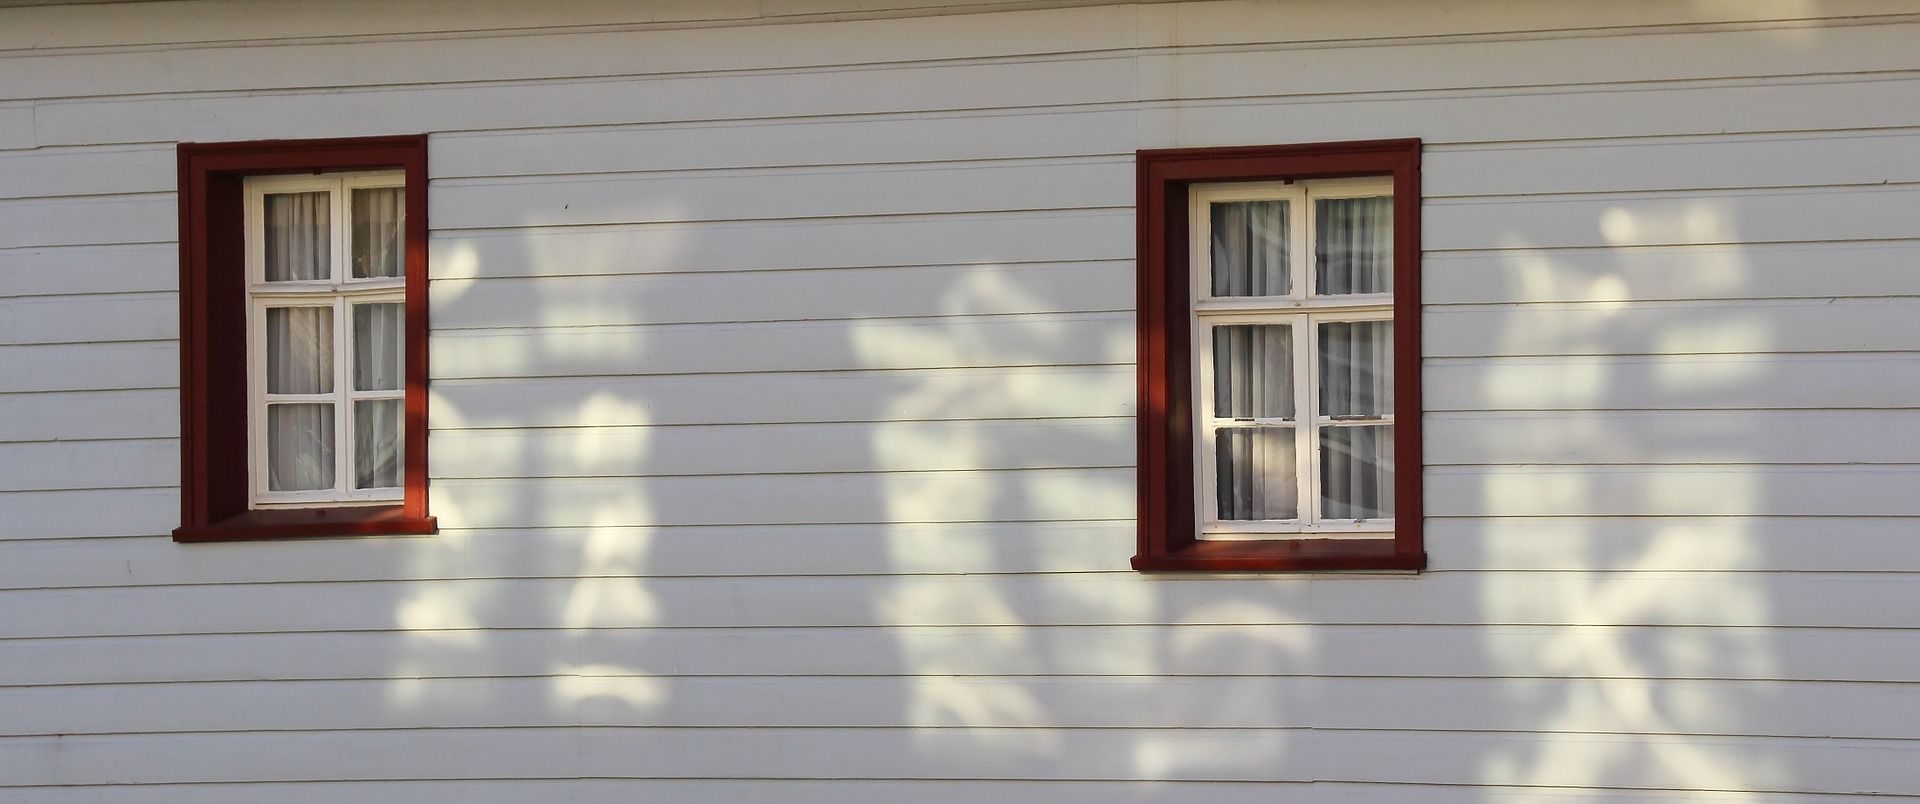 Holzfassade Fenster